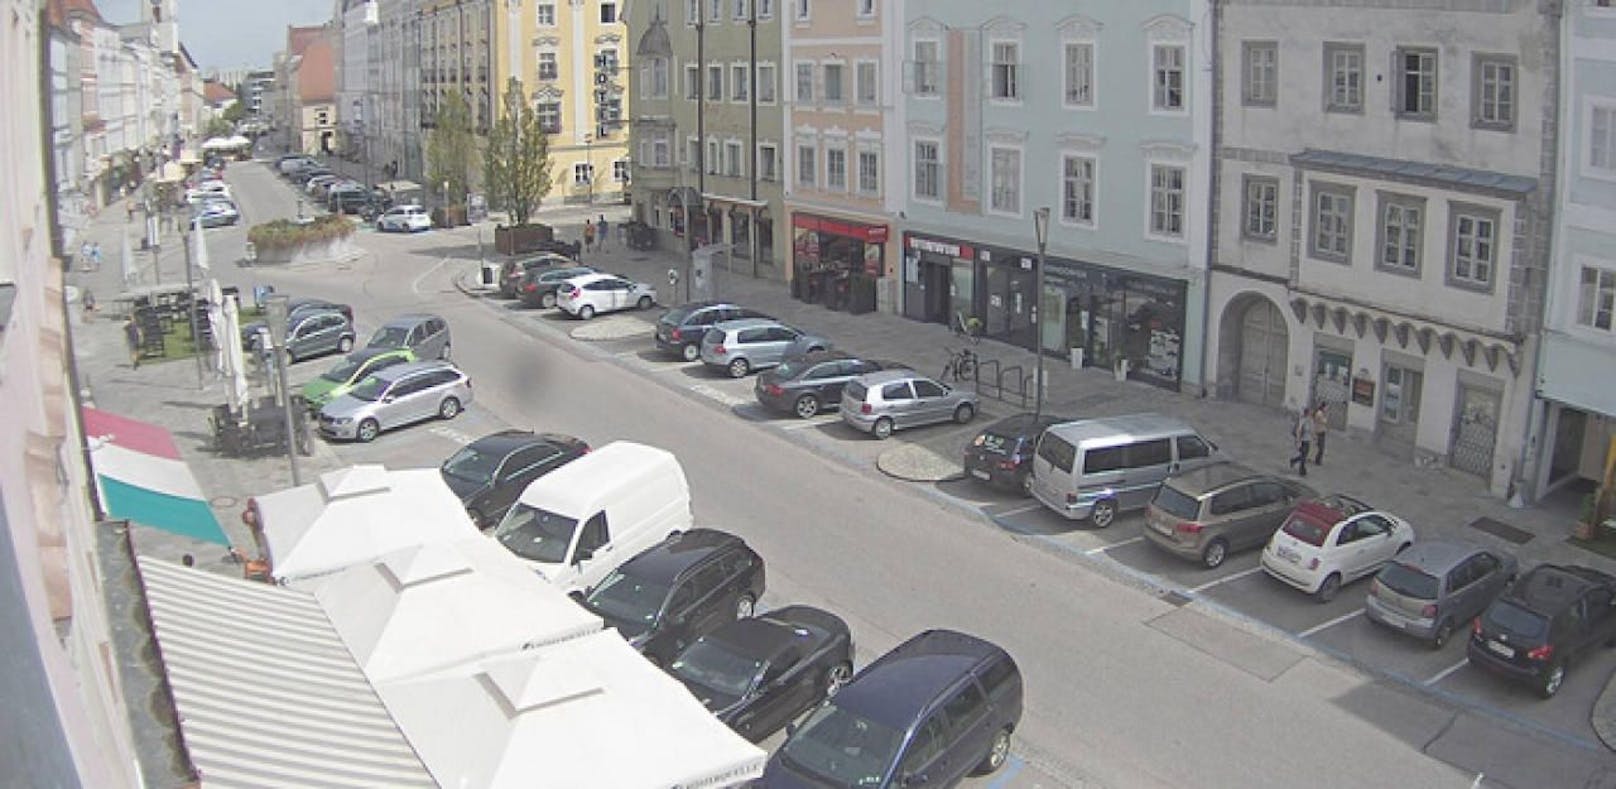 Wer verkehrswidrig parkt, muss in Wels ab 1. September um 45 Prozent mehr zahlen  nämlich 29 Euro.